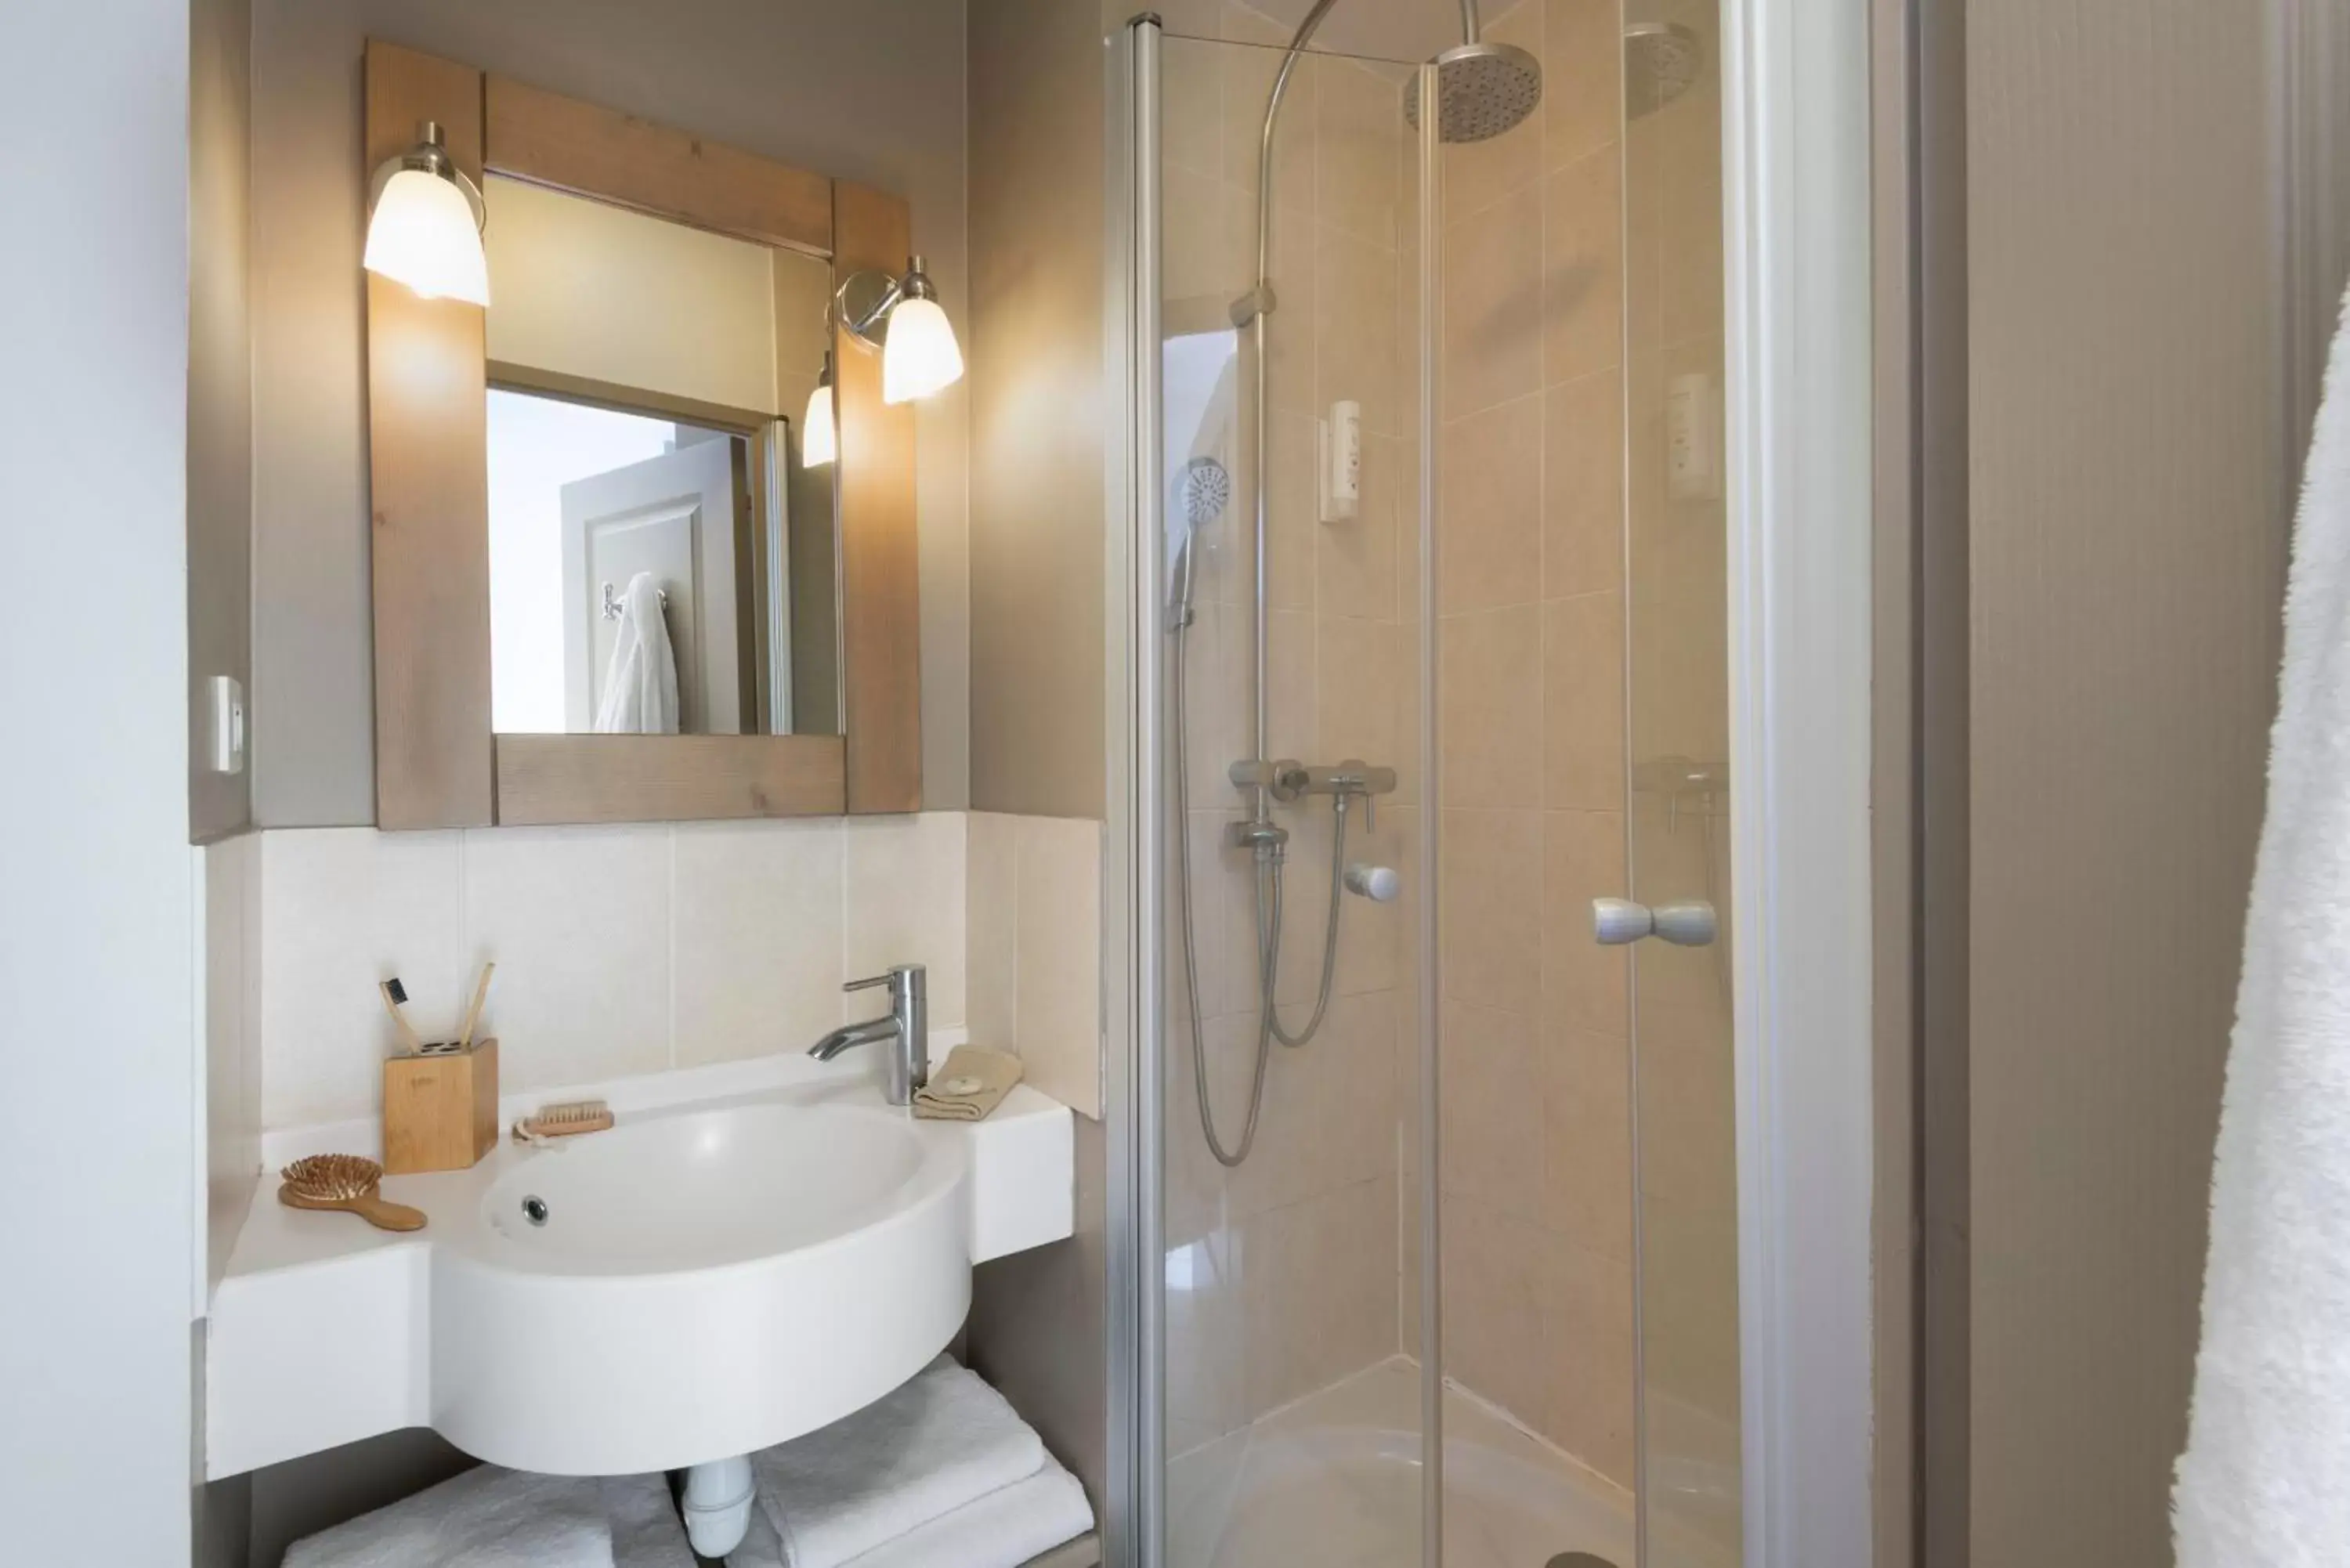 Shower, Bathroom in Pierre & Vacances Premium Residence & Spa Houlgate